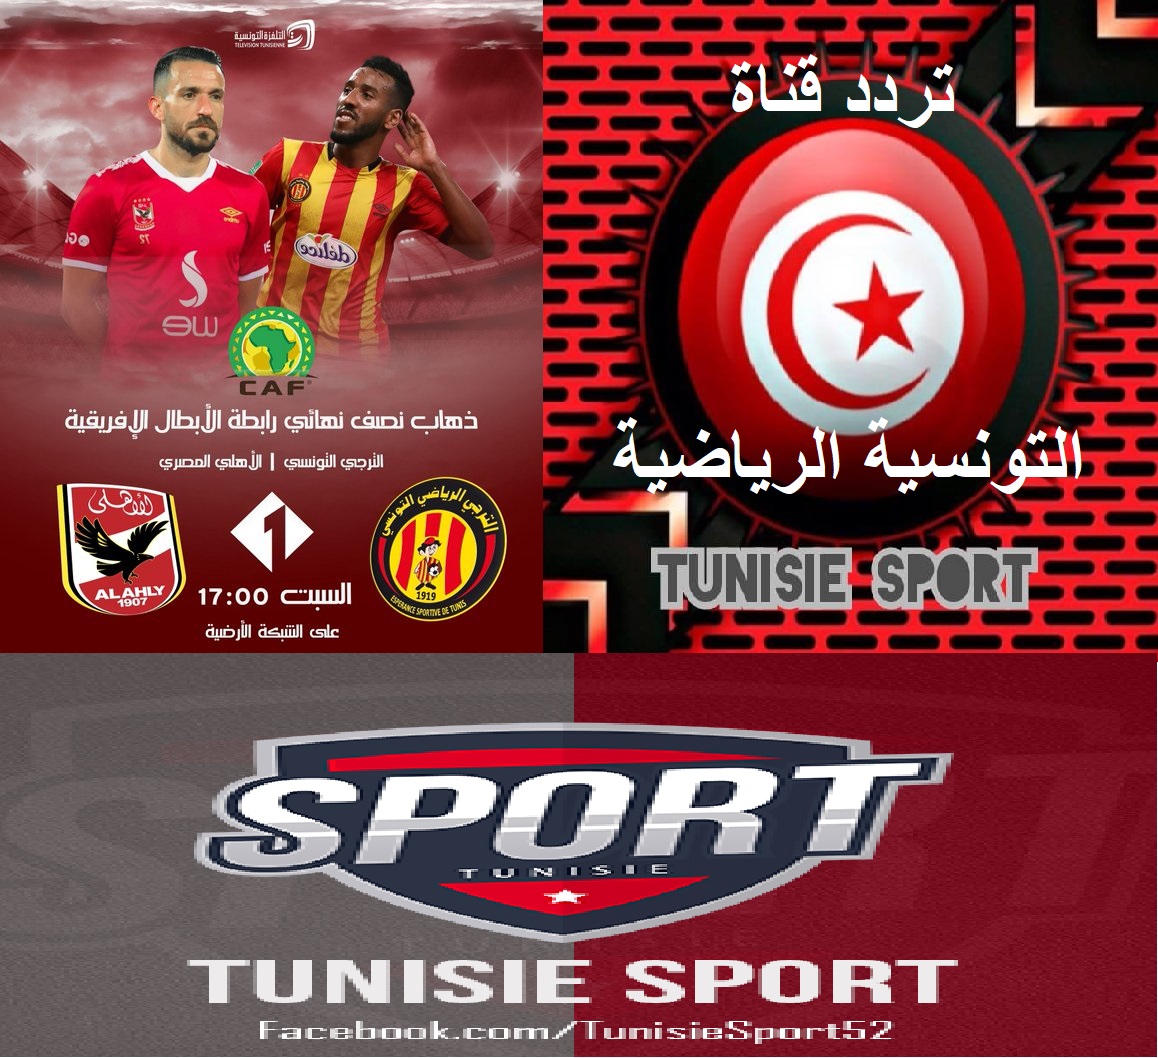 تردد قناة الوطنية التونسية الرياضية Tunisie sport الأرضية والفضائية 2021 الناقلة مباراة الأهلي والترجي